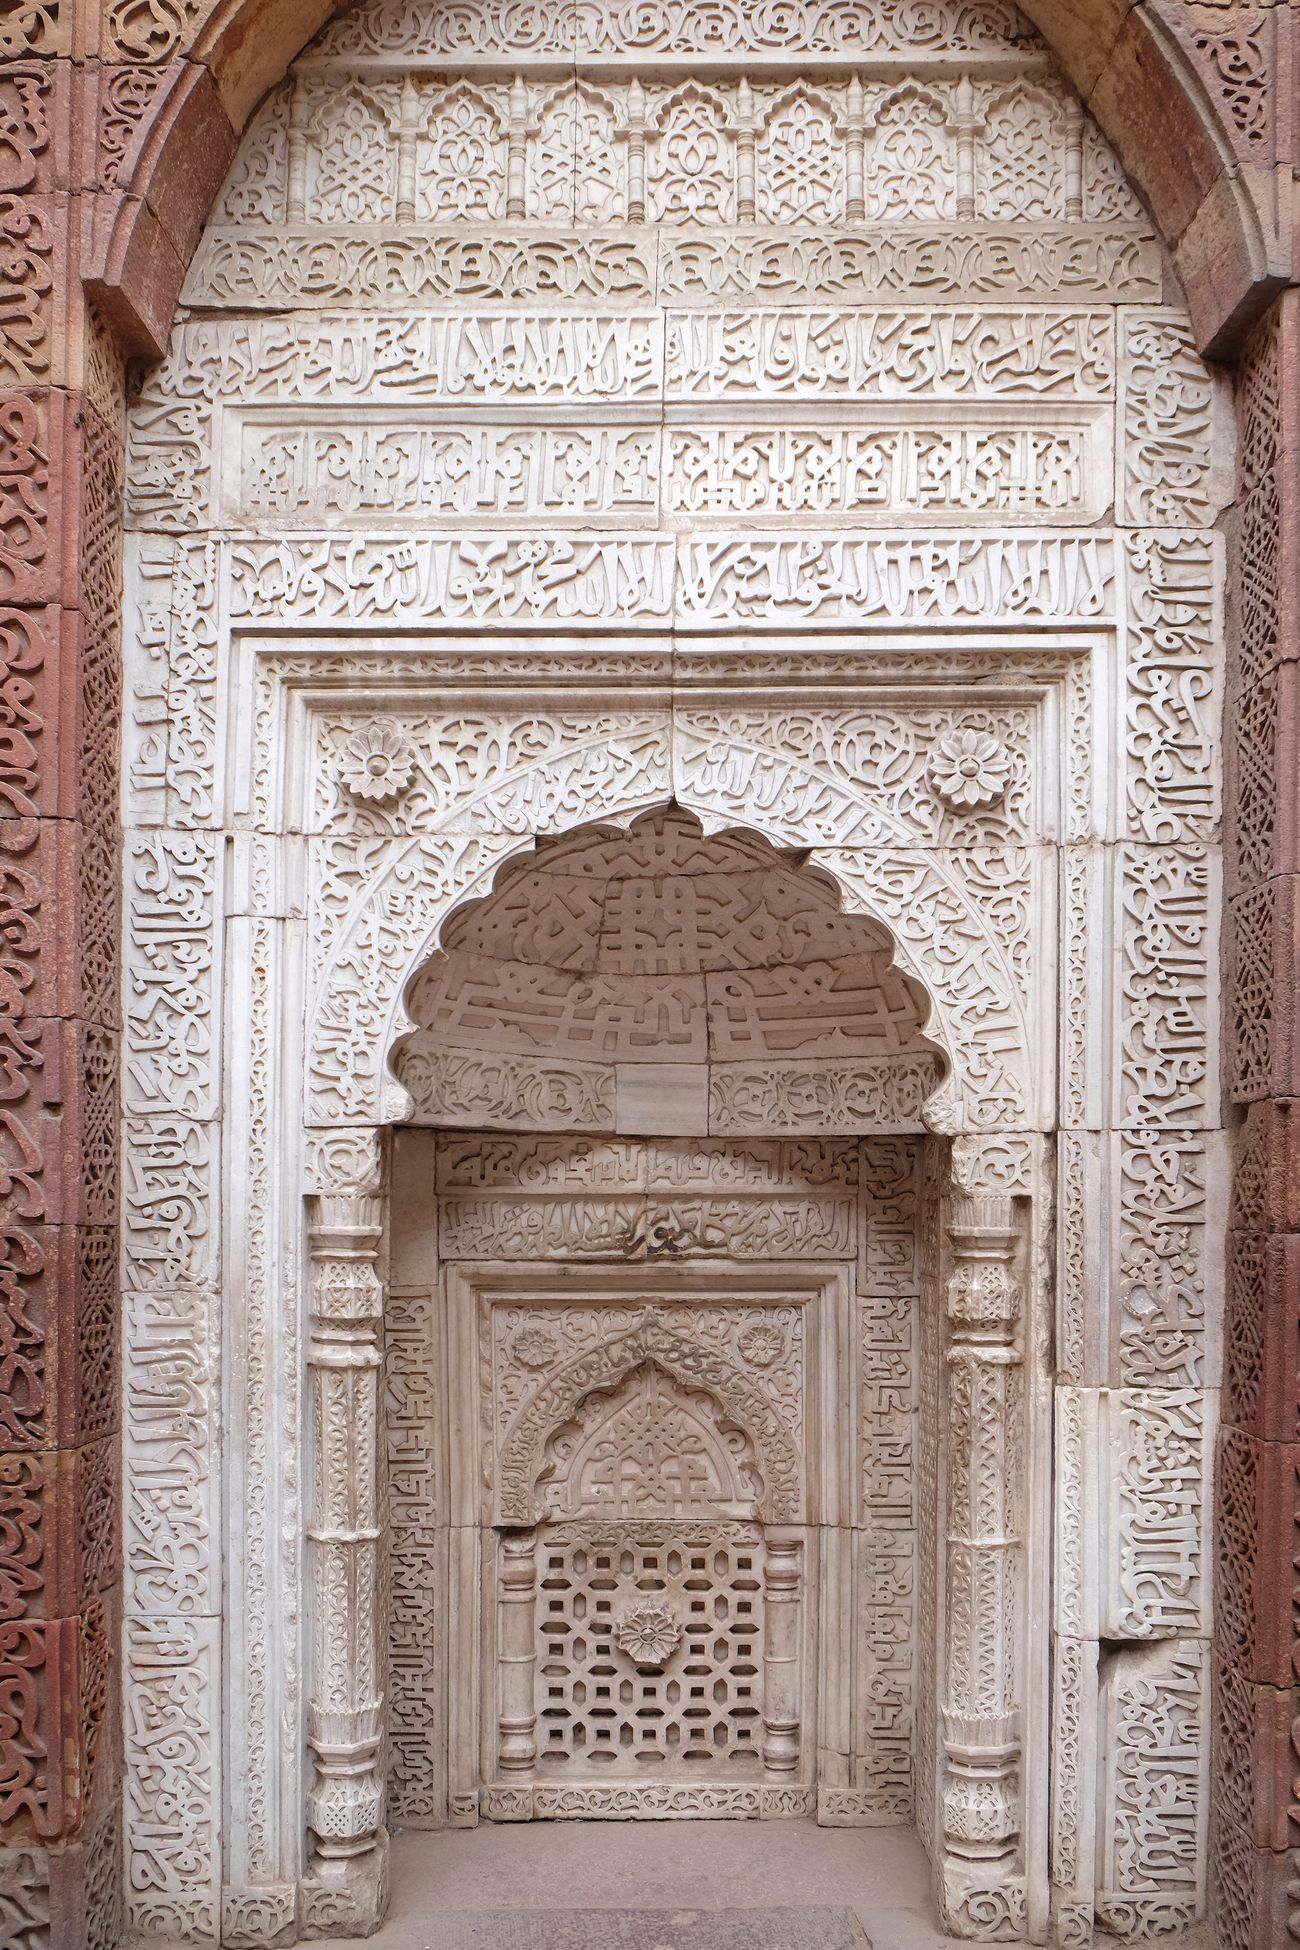 stone carving on qutab minar45